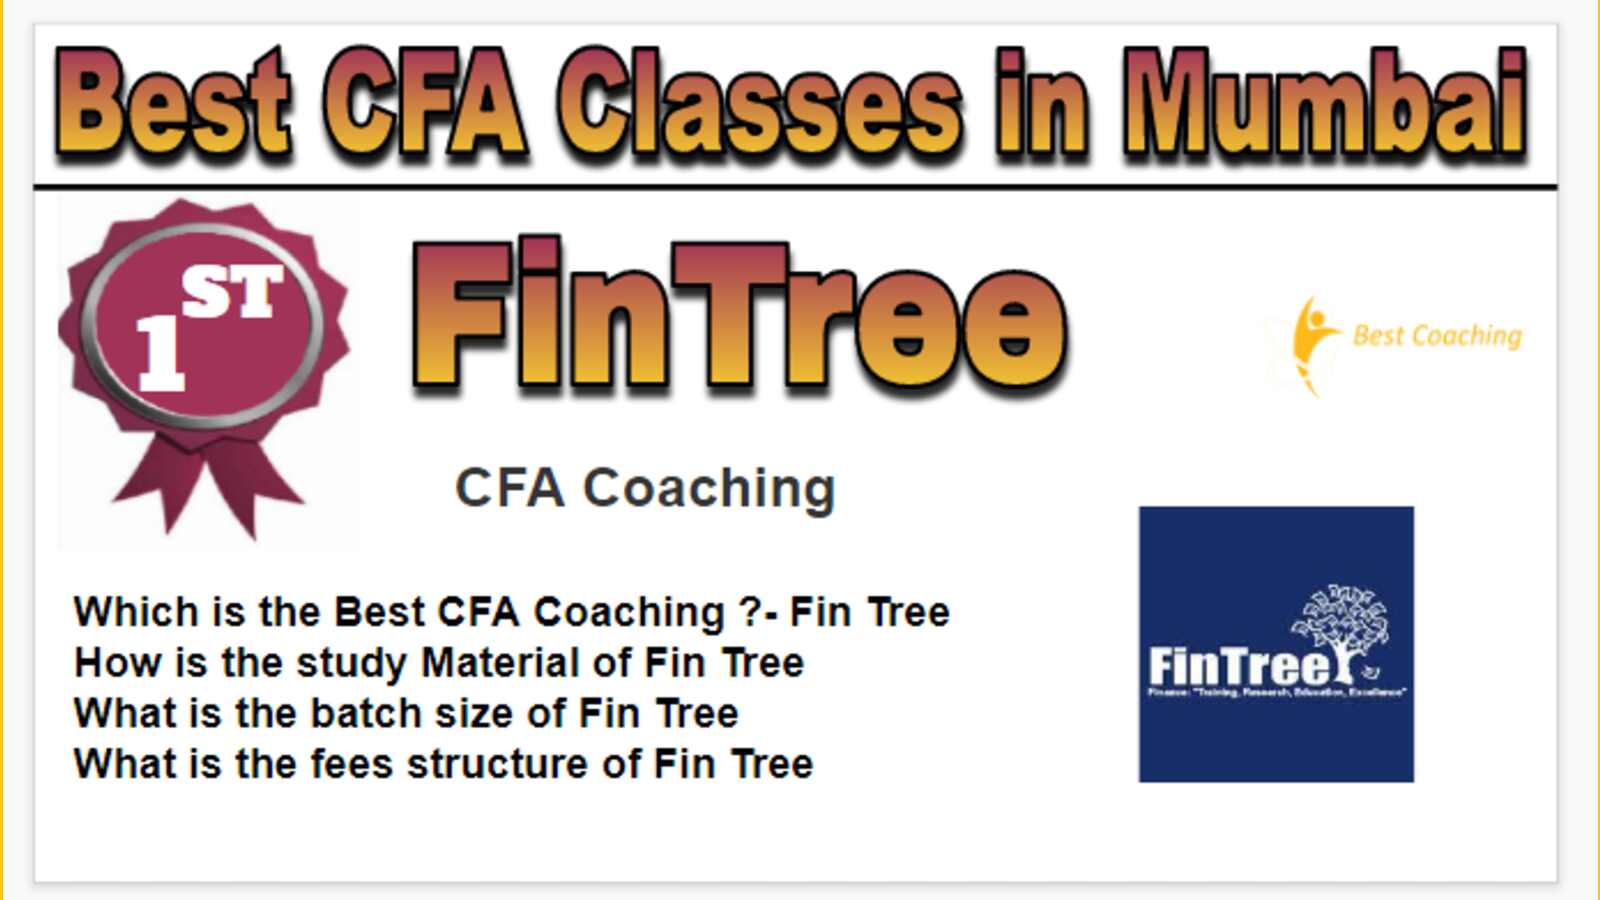 Rank 1 Best CFA Classes in Mumbai